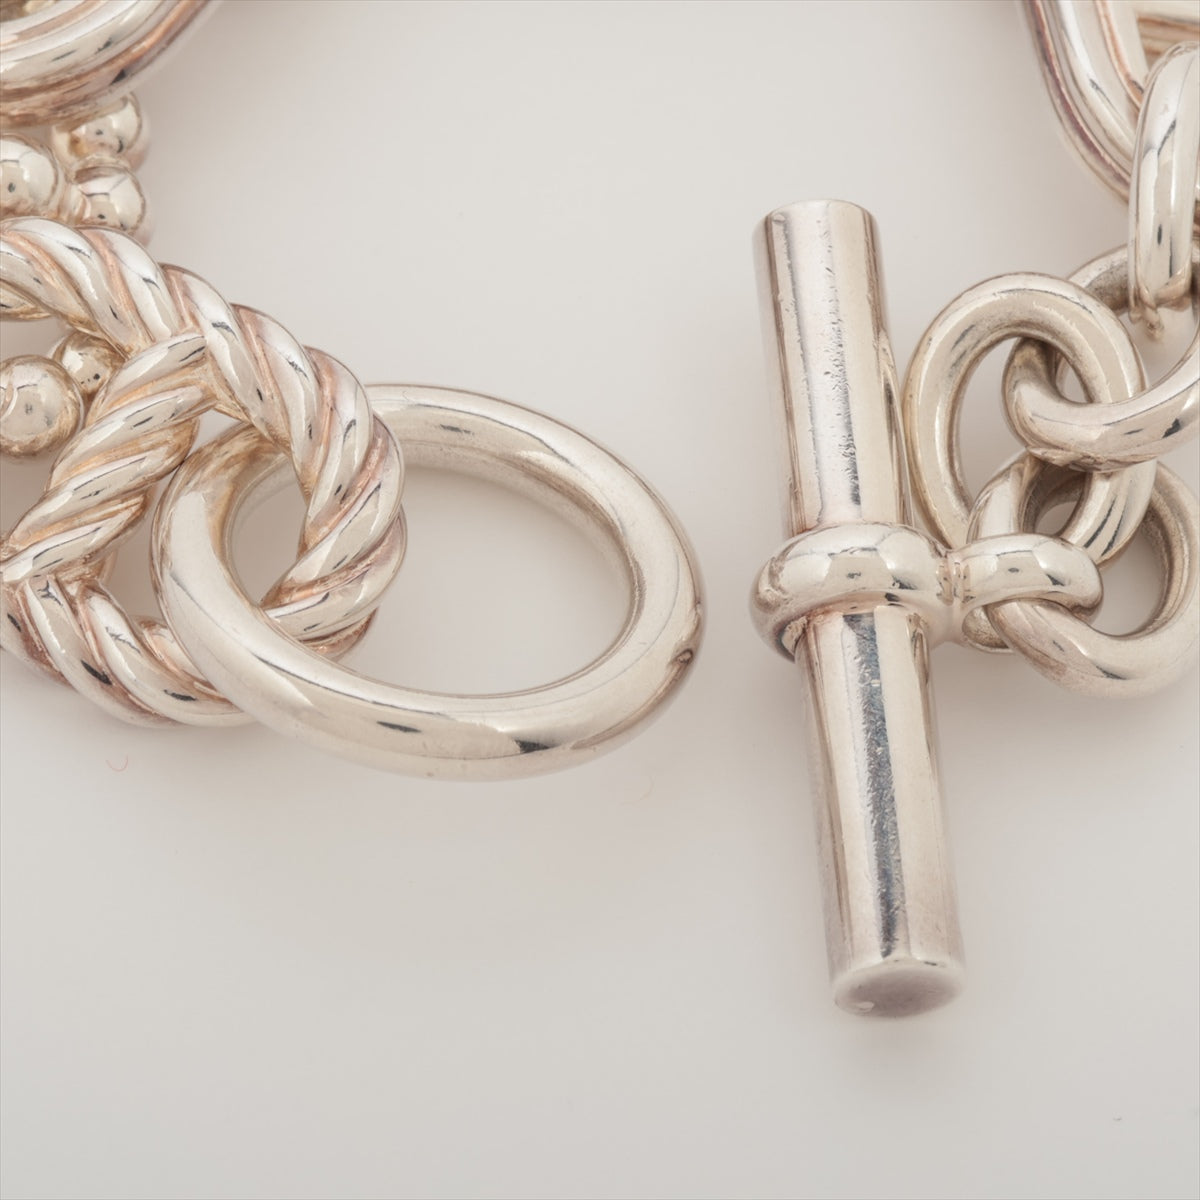 Hermès Chaîne d'Ancre Parade Torsade TGM Bracelet 925 180.0g Silver